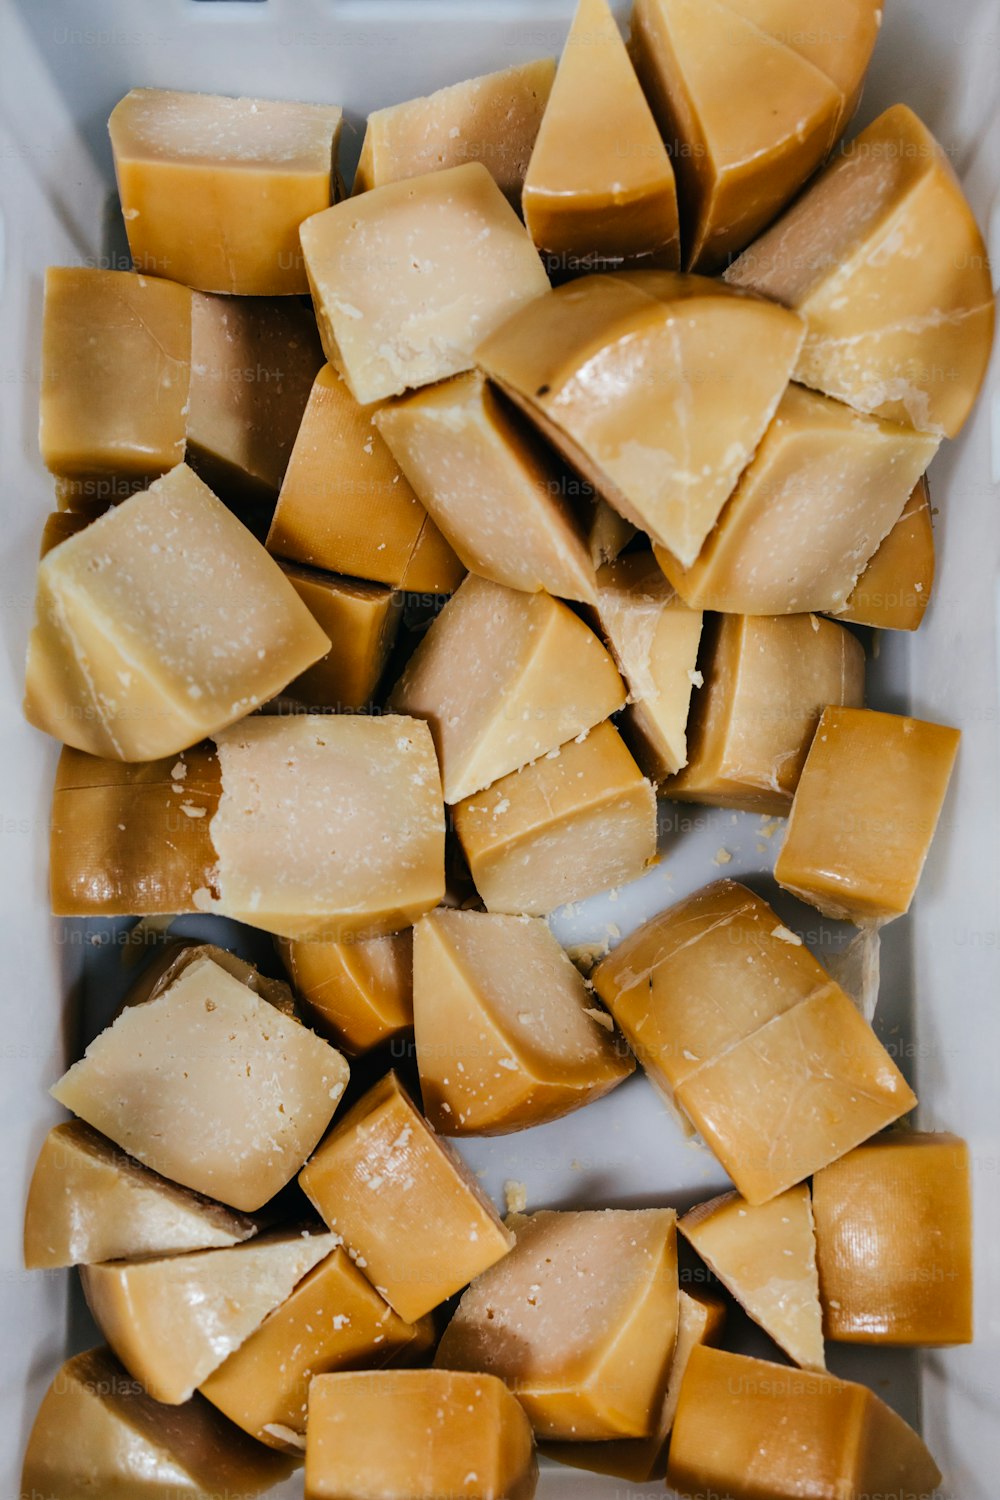 Detalhes da tradicional fábrica de produção de queijos e laticínios. Pedaços de queijo delicioso fatiado prontos para embalagem.